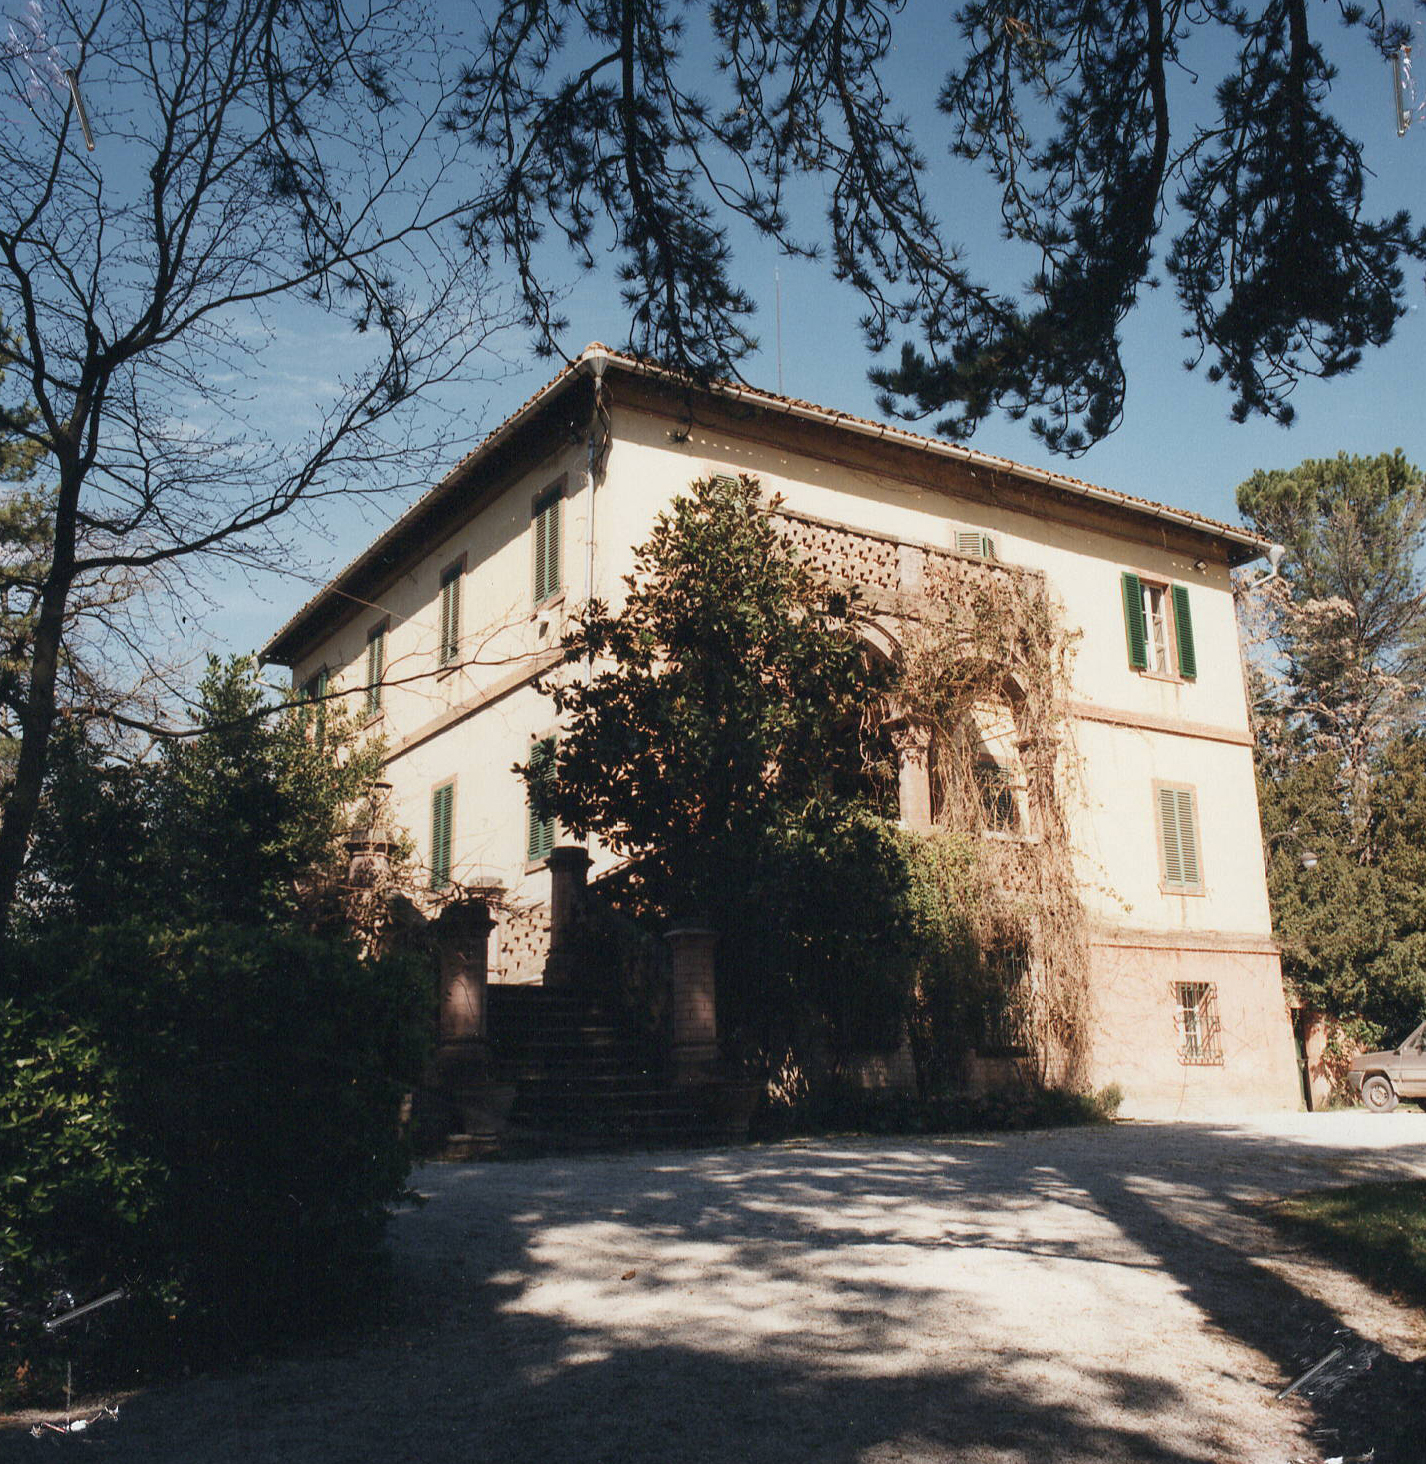 Villa Battibocca (villa, privata) - Camerino (MC) 